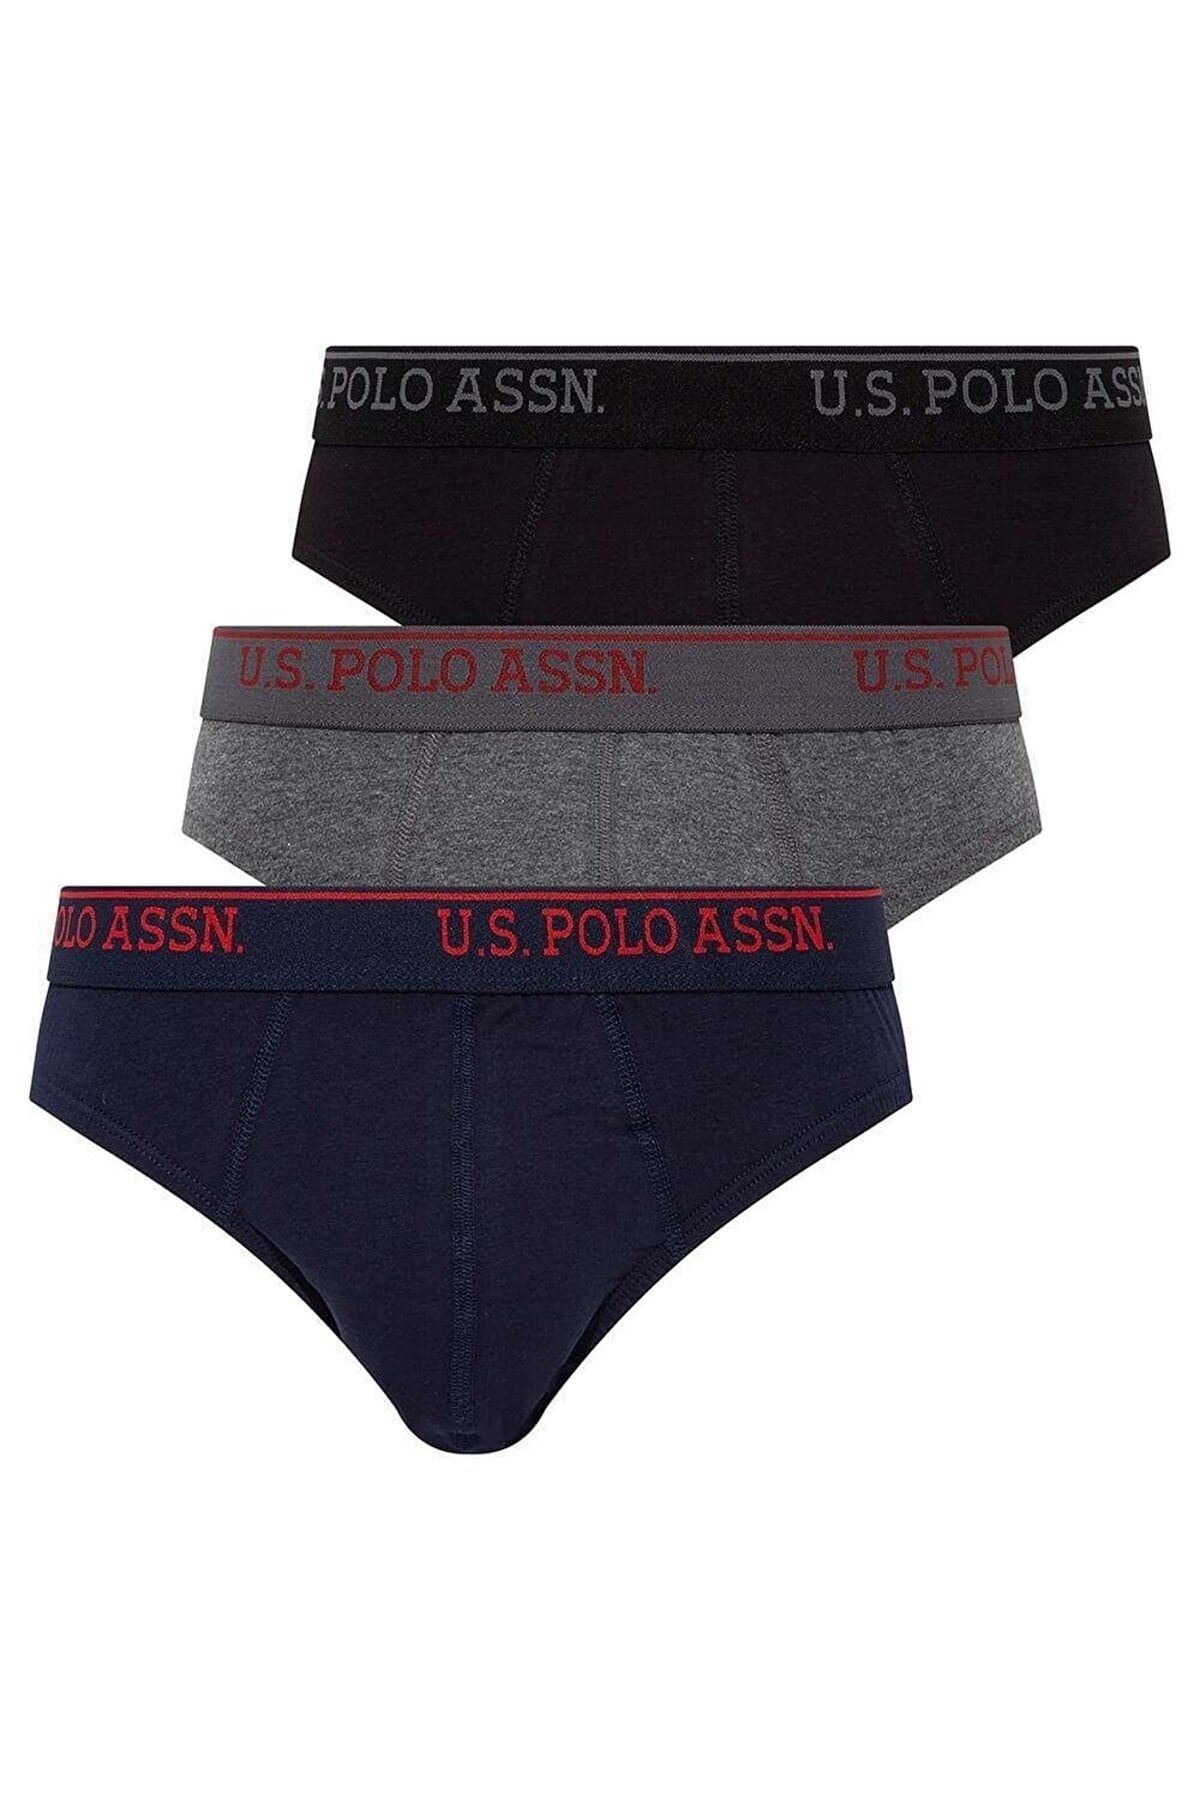 U.S. Polo Assn. Erkek Siyah - Antrasit Melanj - Lacivert 3 Lü Slip